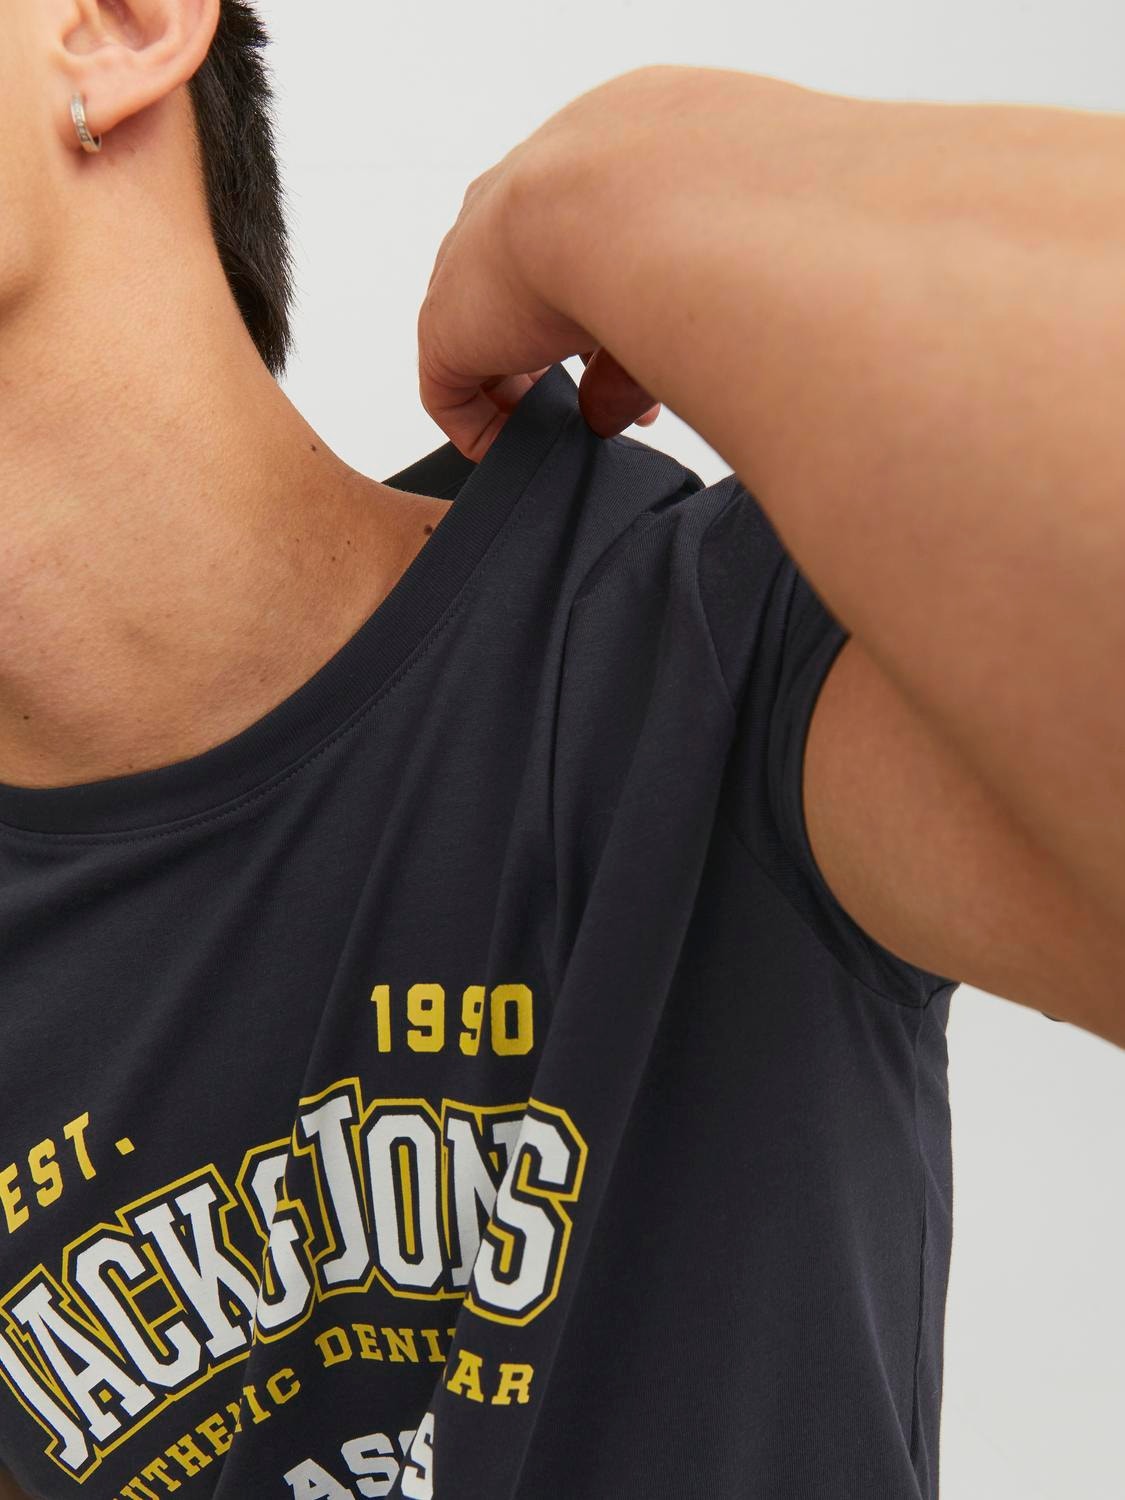 Jack & Jones Logo Crew neck T-shirt -Dark Navy - 12233594